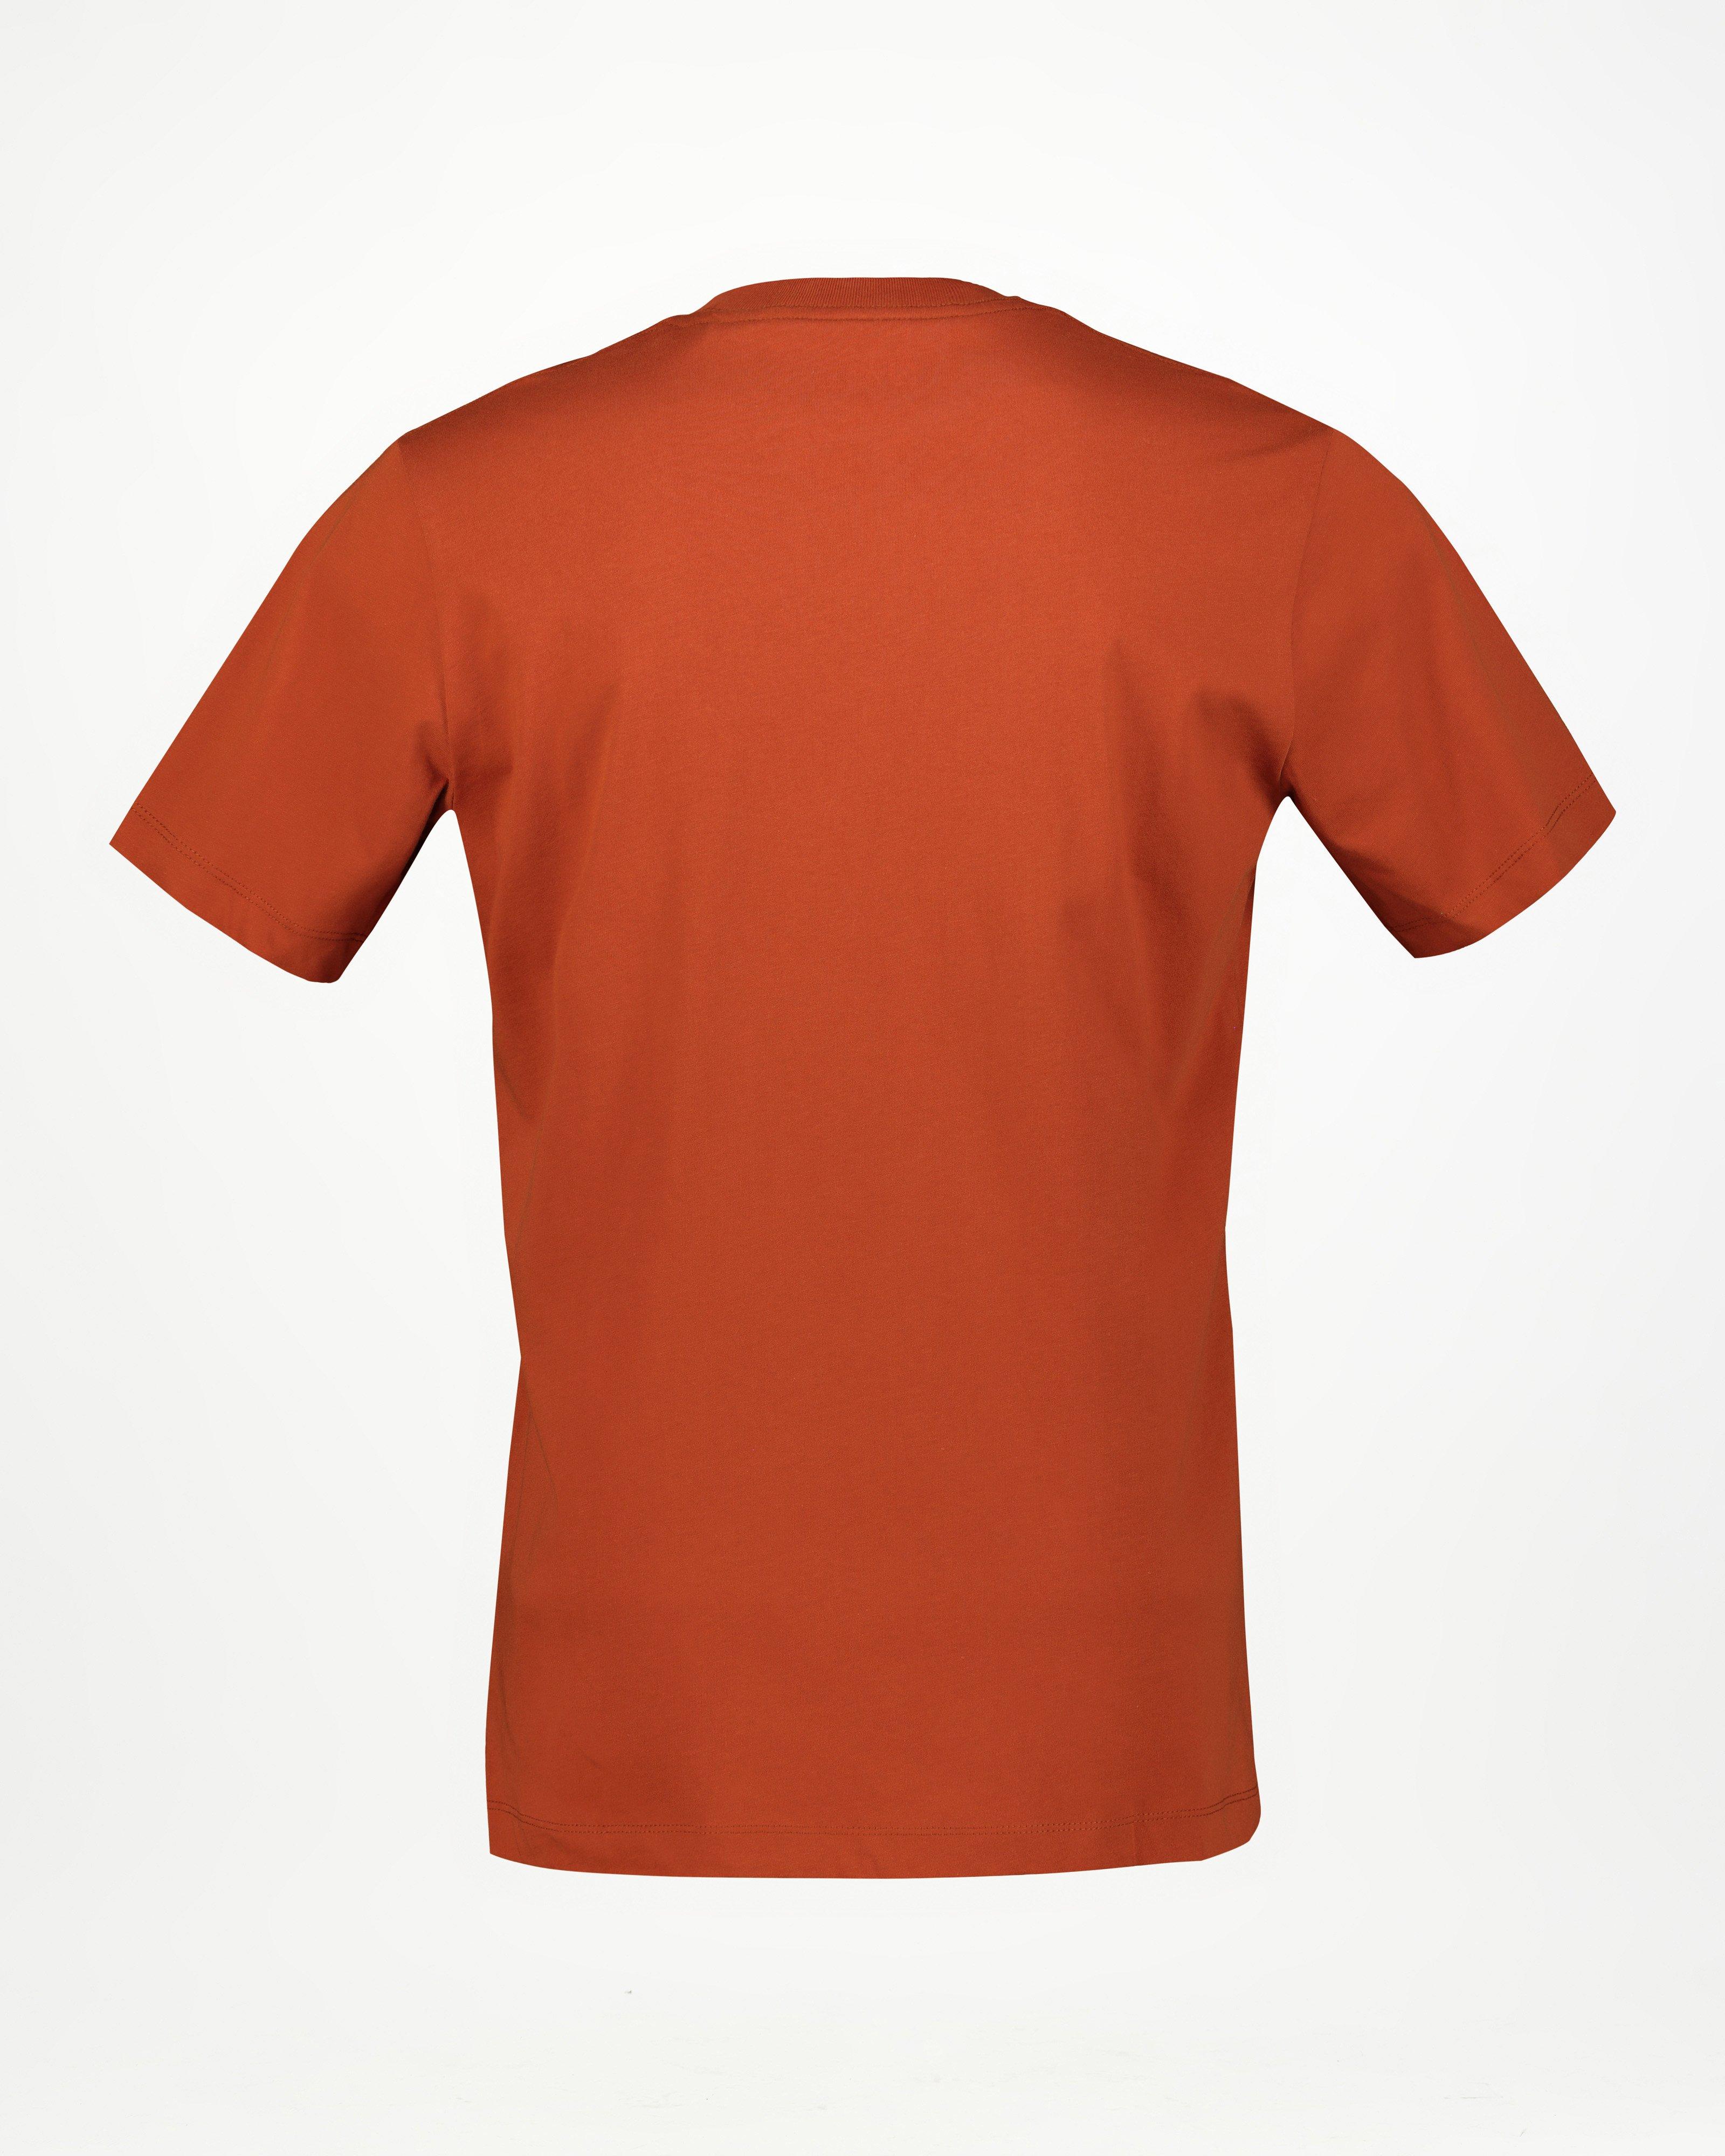 Jack Wolfskin Men’s Essential Logo Cotton T-shirt -  Dark Red